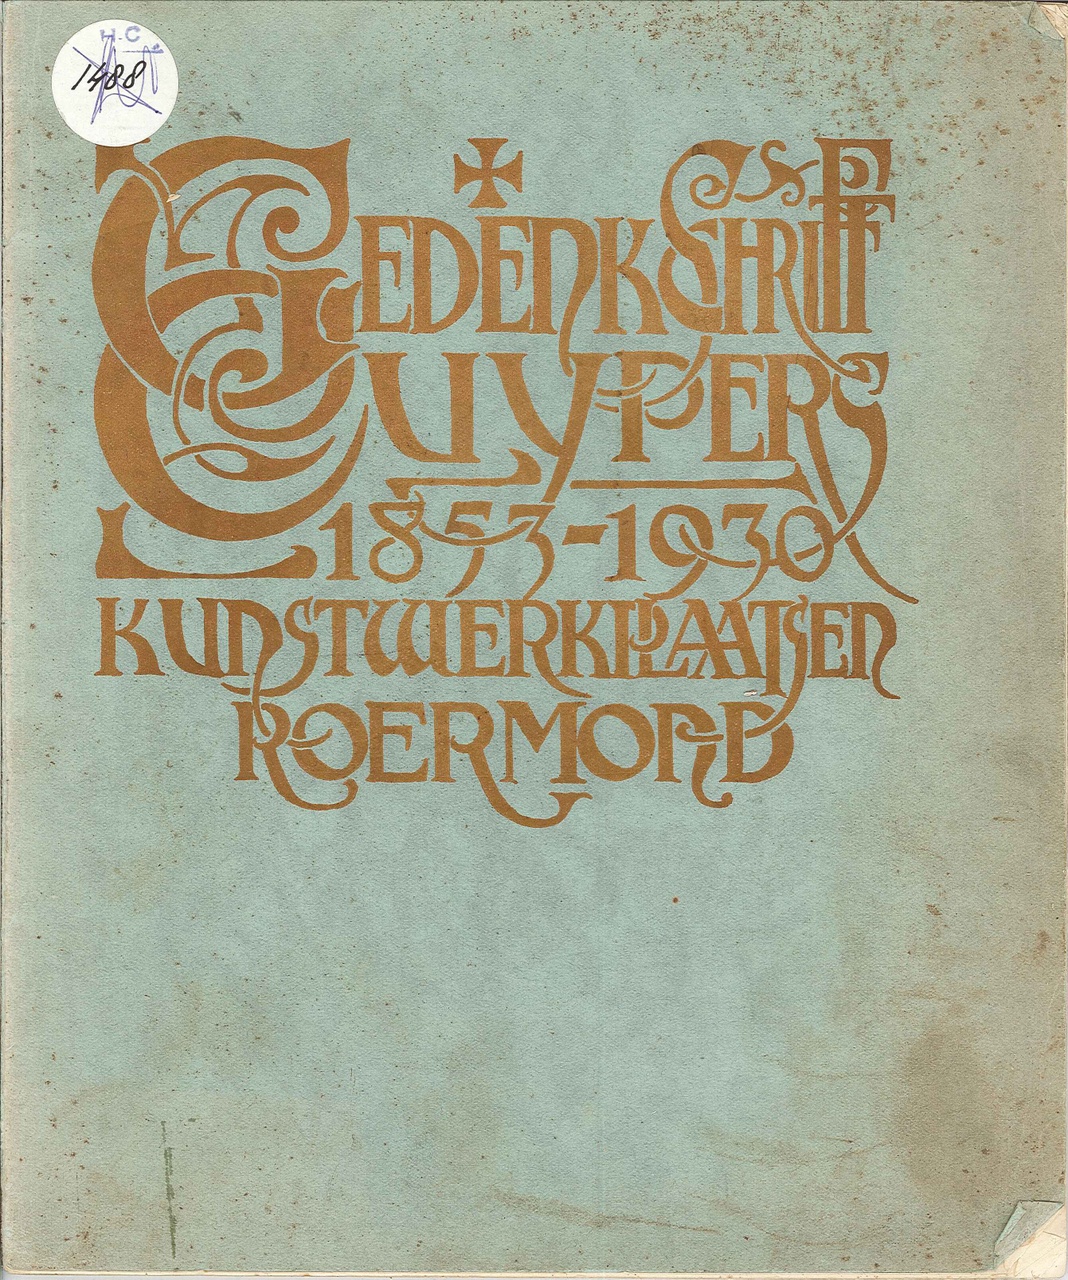 Gedenkschrift Cuypers' kunstwerkplaatsen Roermond 1853-1930